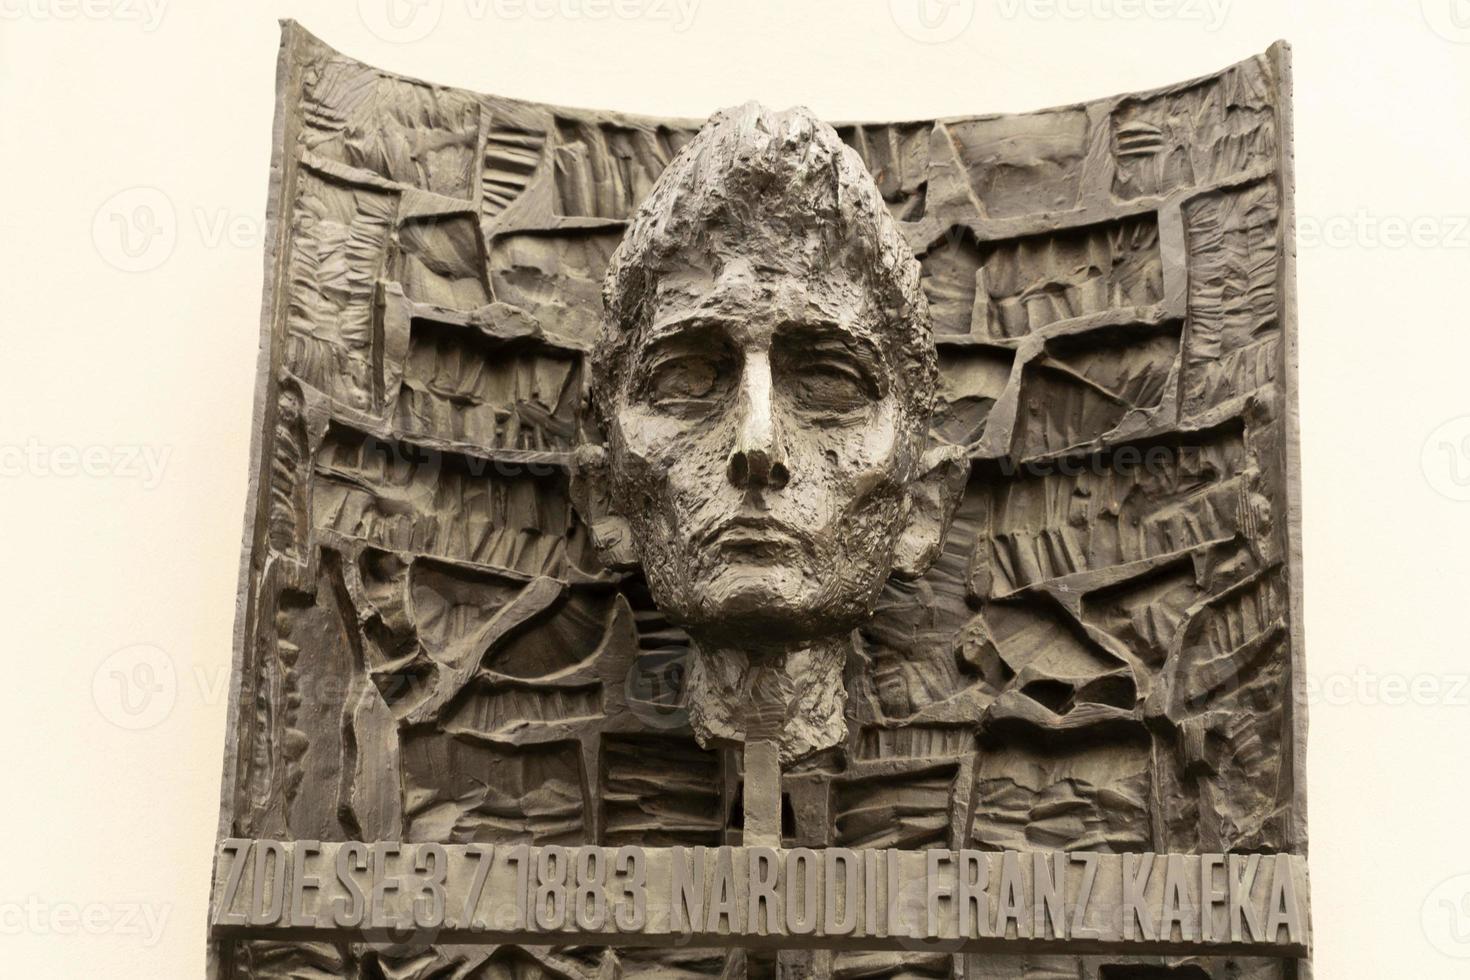 Franz kafka bas le soulagement Prague monument photo